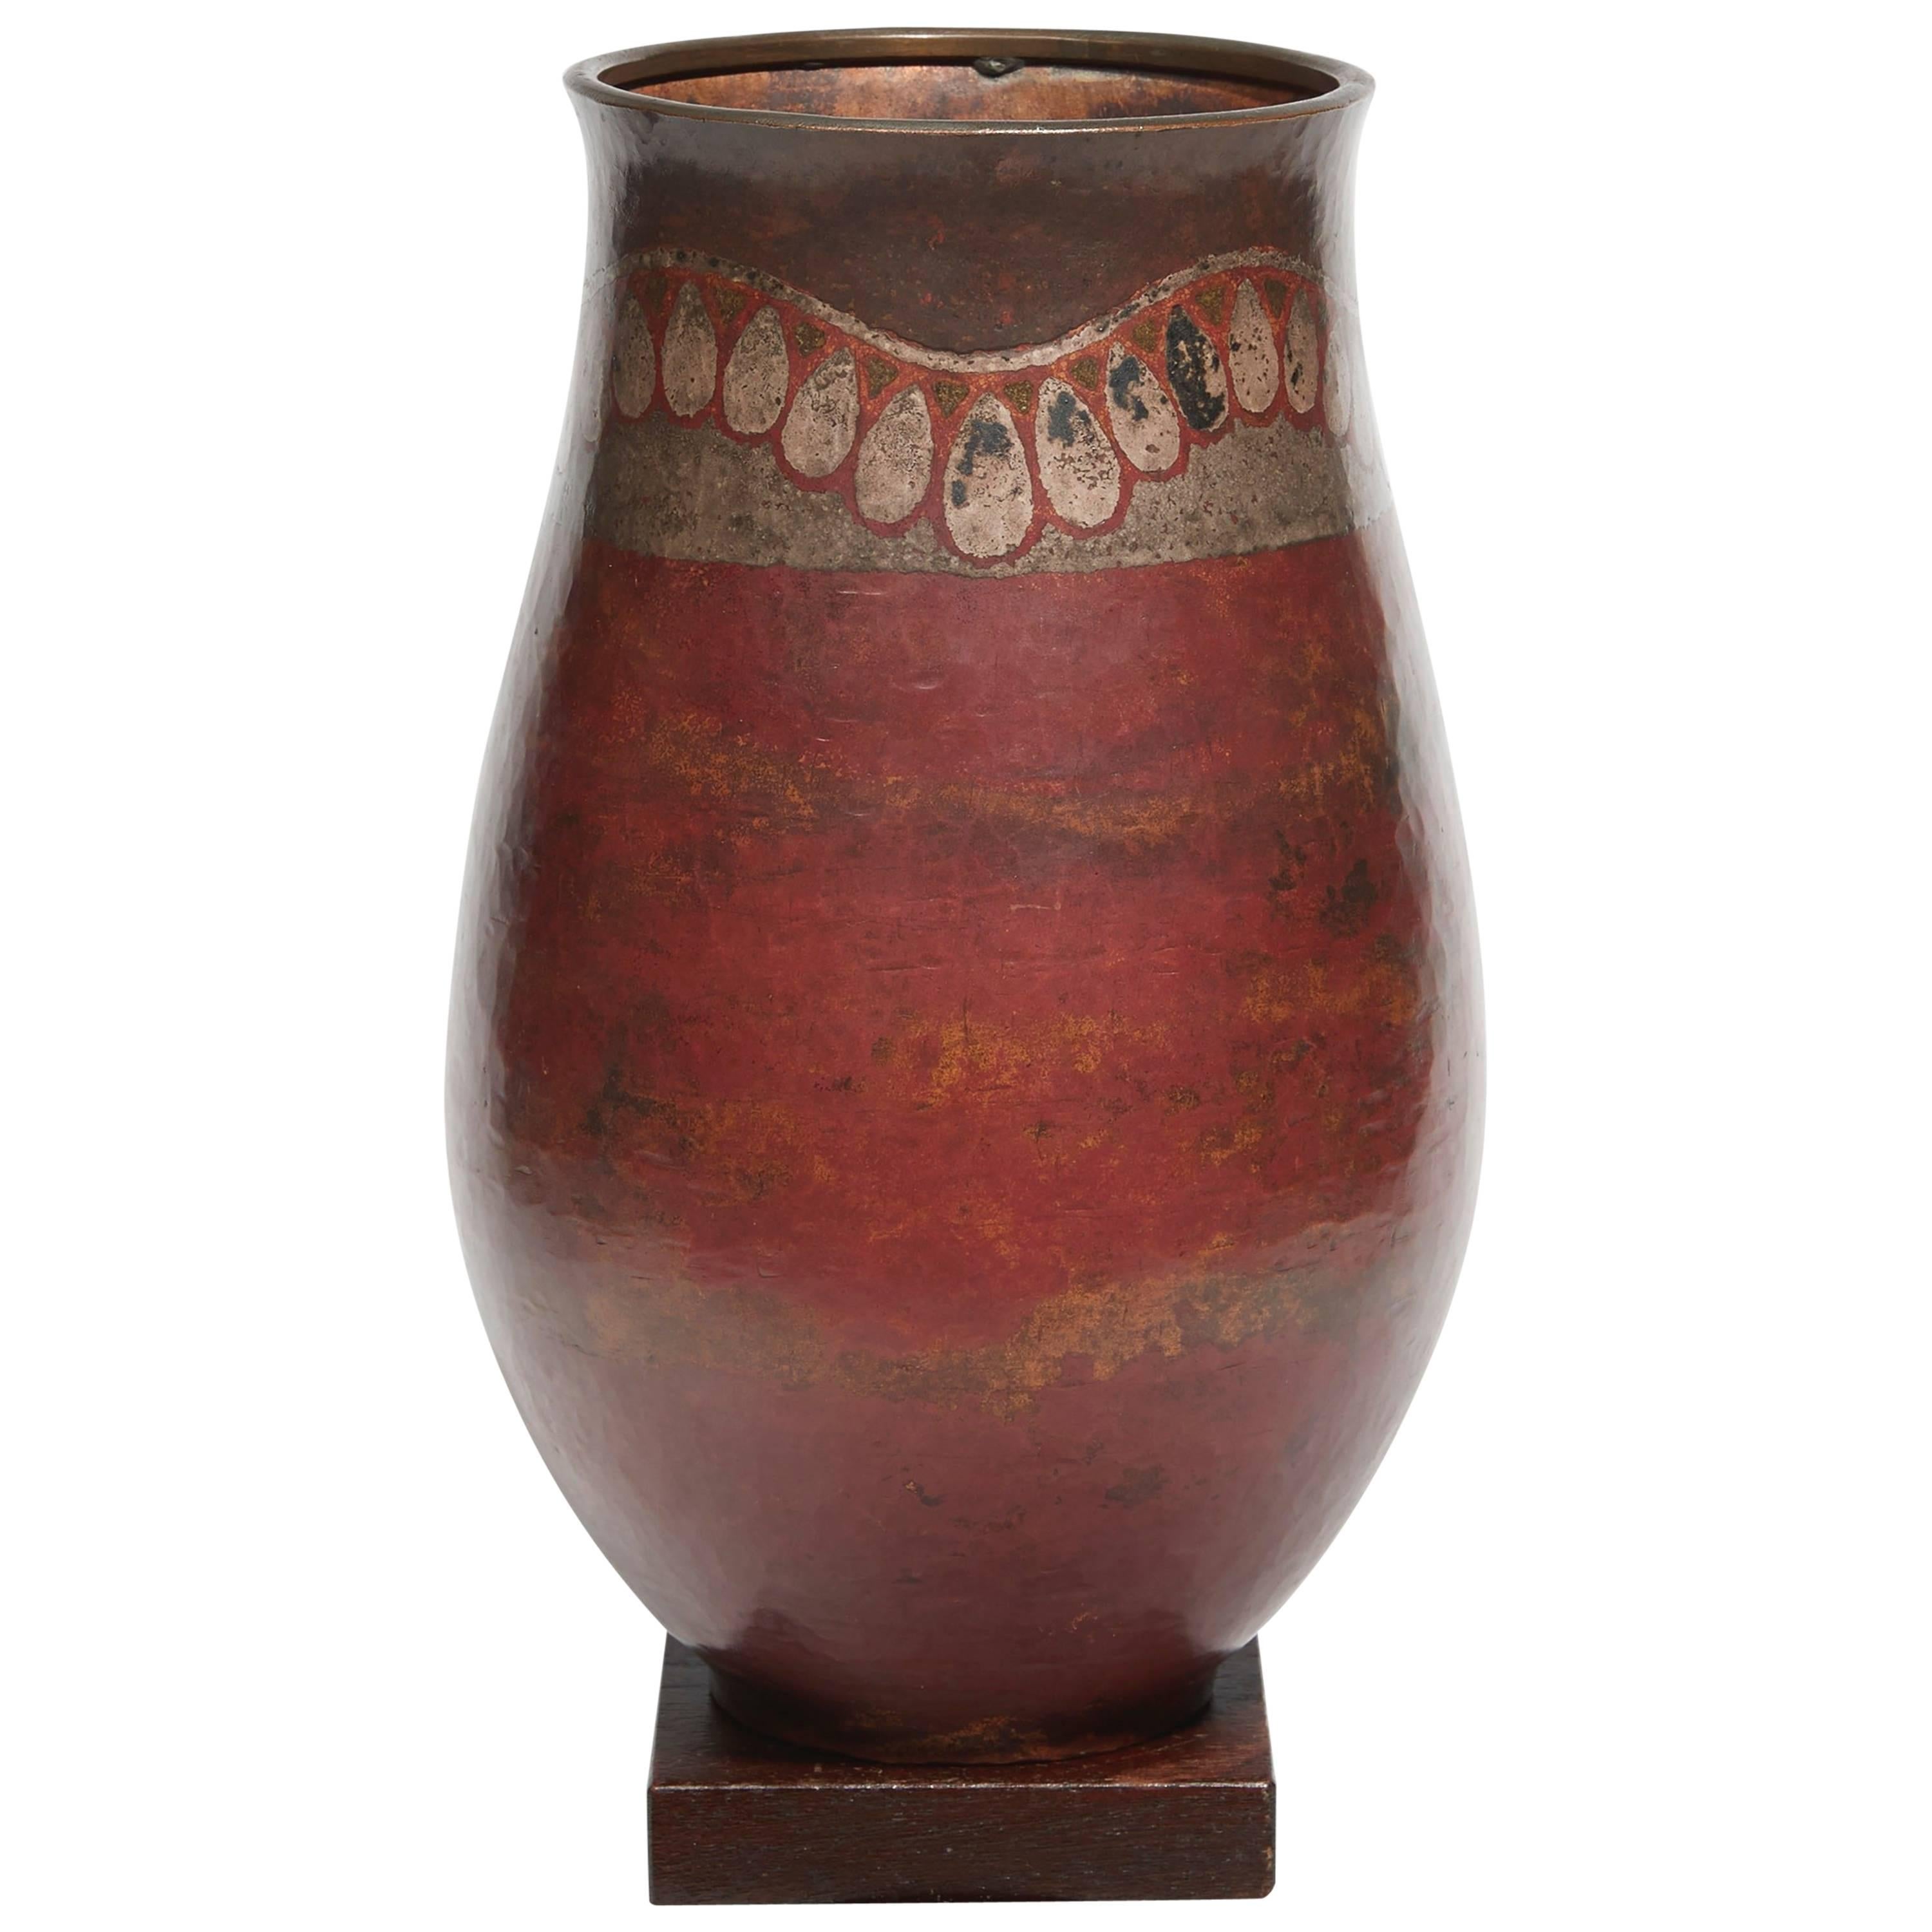 Vase « Organiculation de pendeloque » de Claudius Linossier, vers 1930